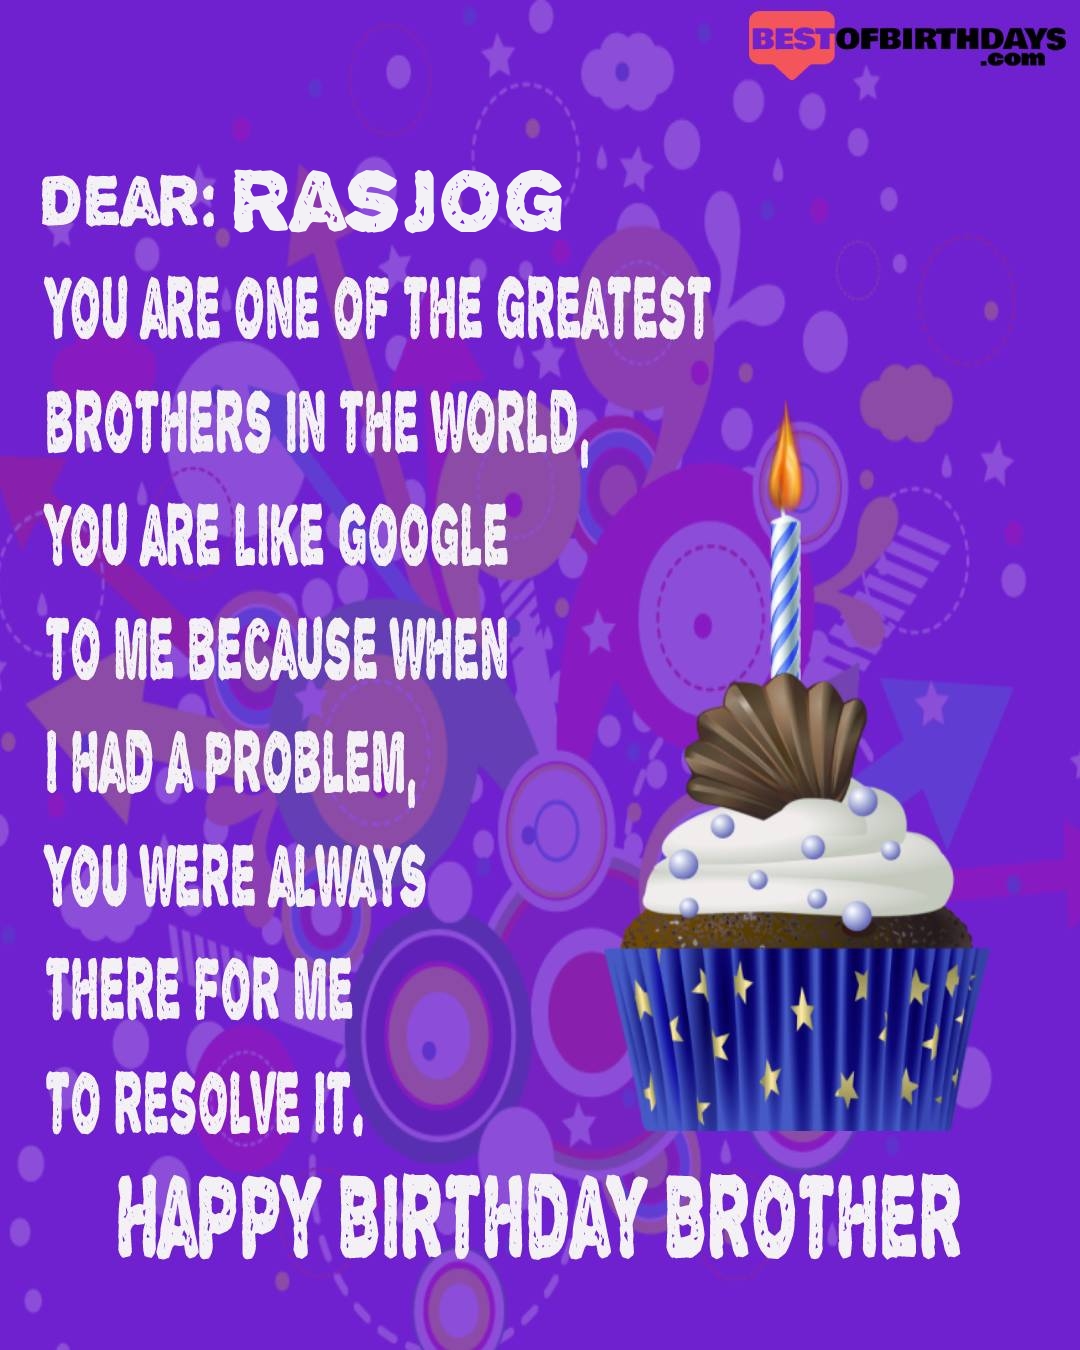 Happy birthday rasjog bhai brother bro